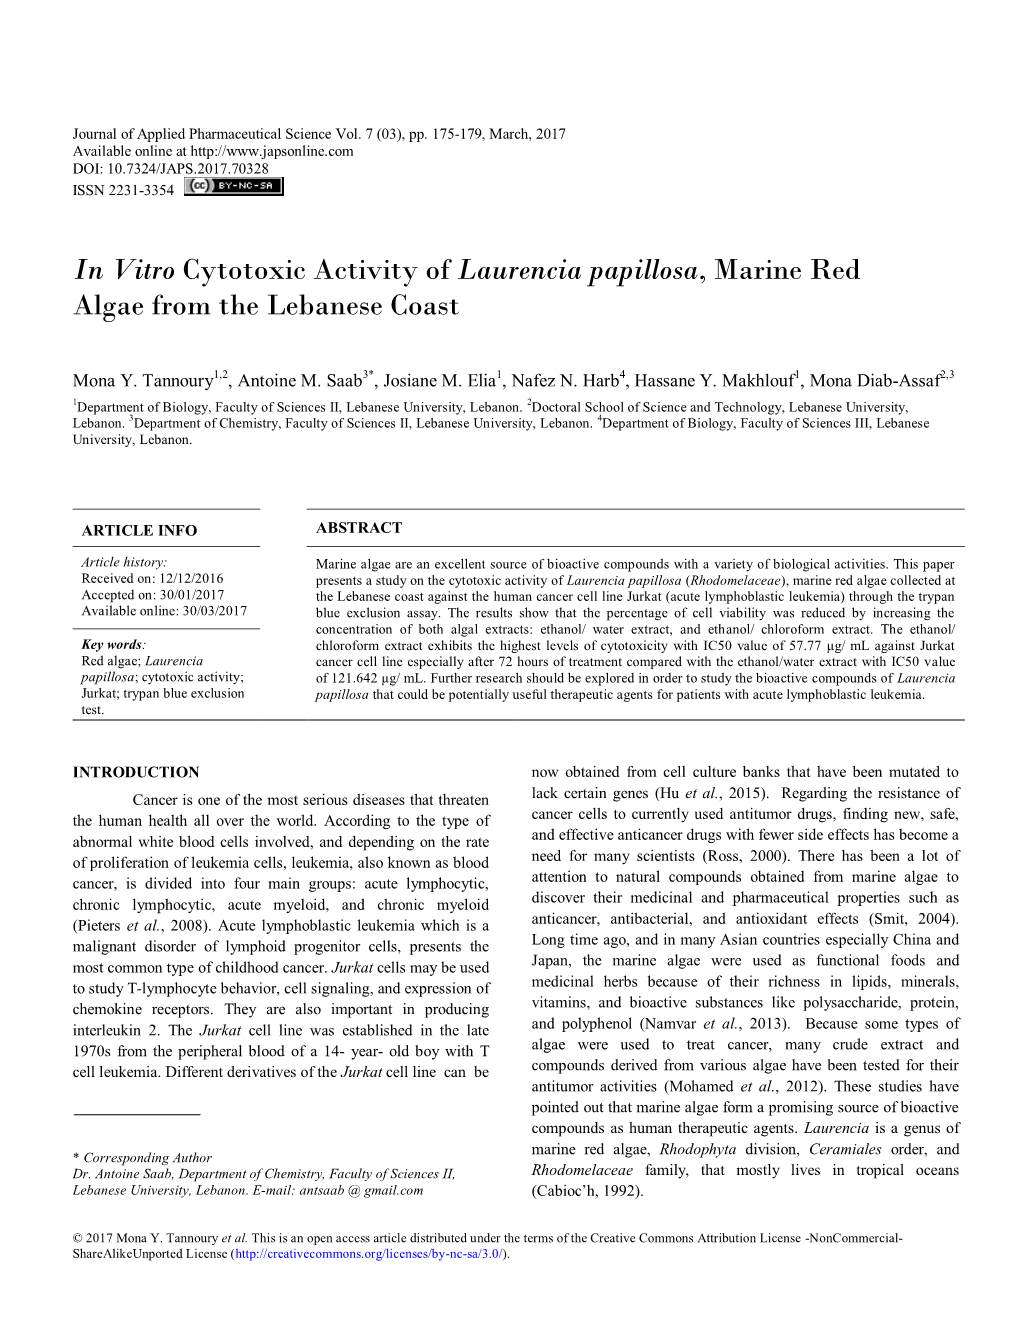 In Vitro Cytotoxic Activity of Laurencia Papillosa, Marine Red Algae from the Lebanese Coast